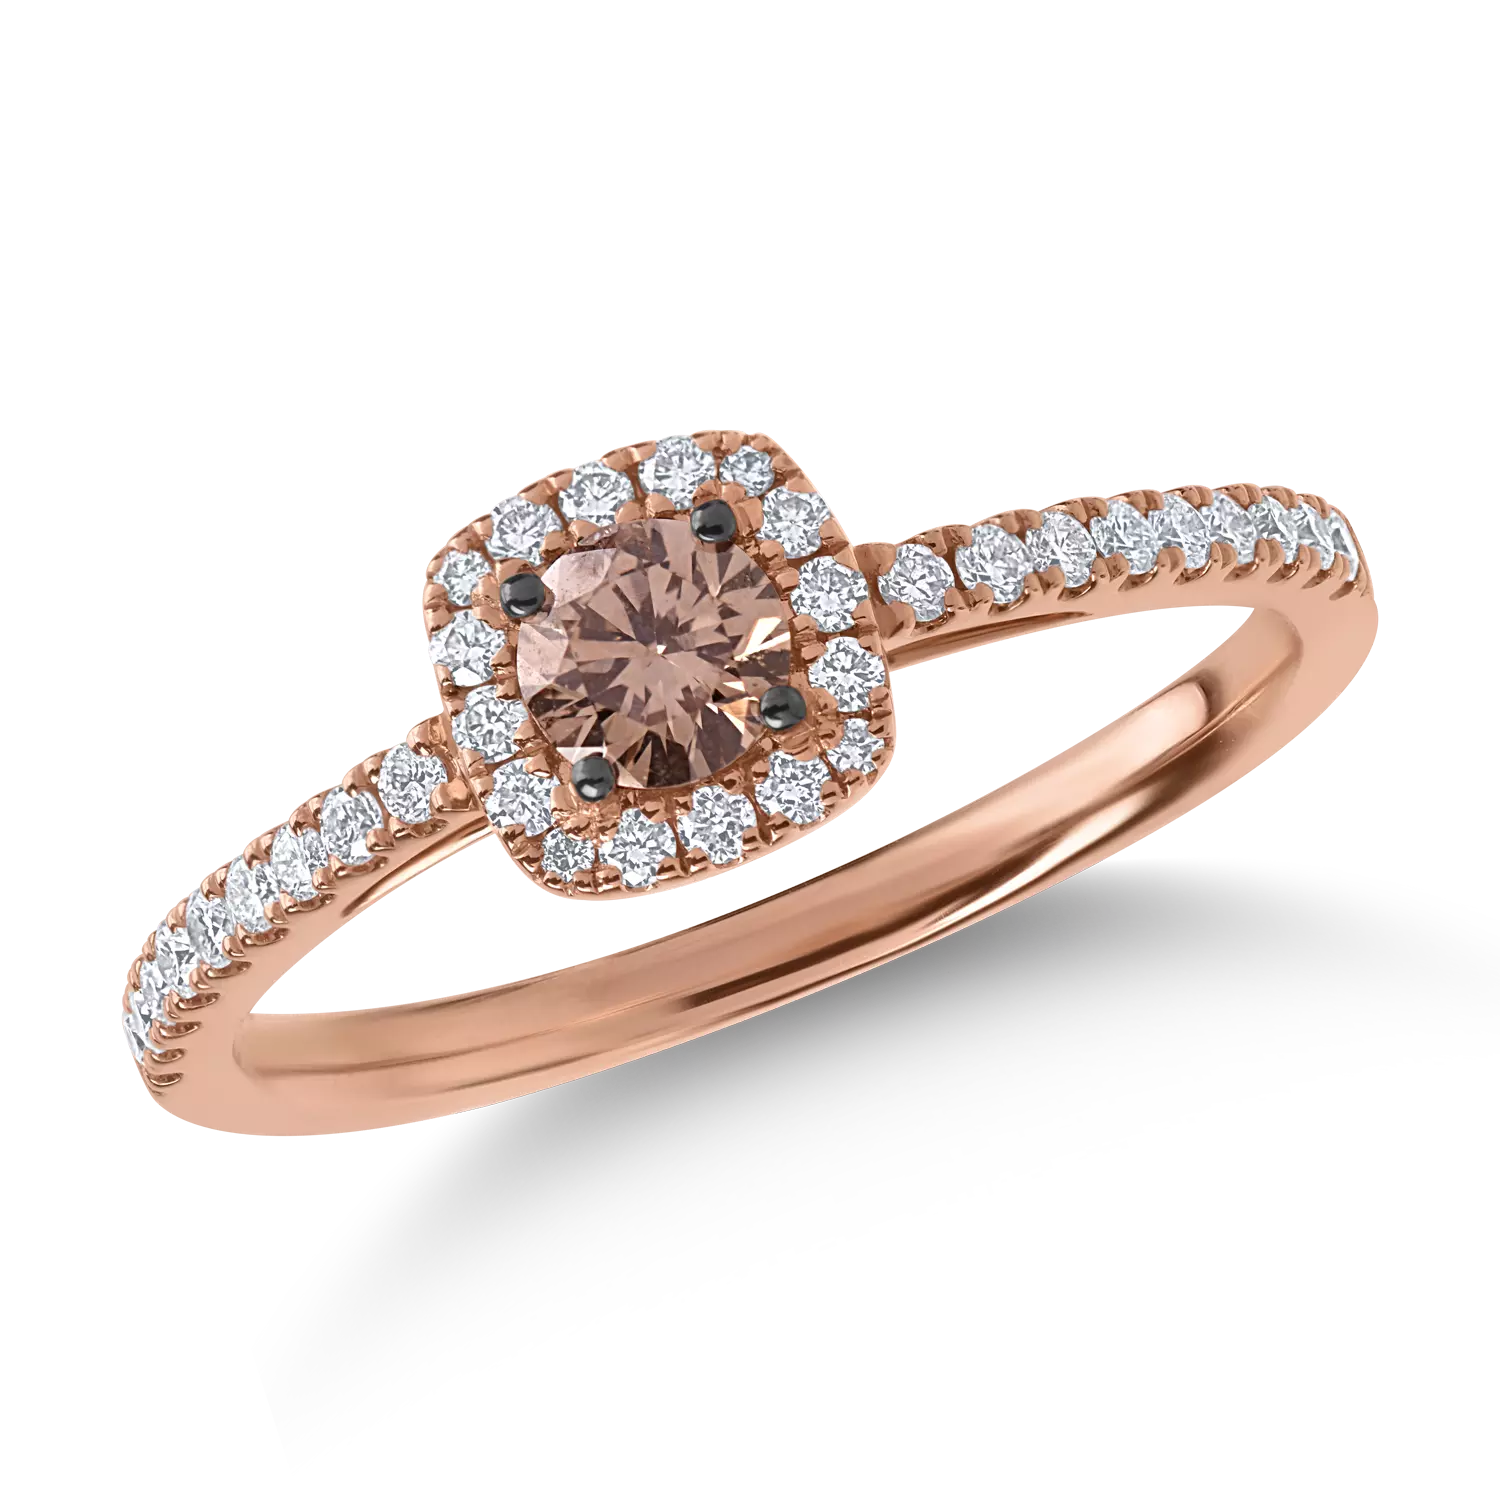 Inel din aur roz cu diamant maro de 0.25ct si diamante transparente de 0.23ct